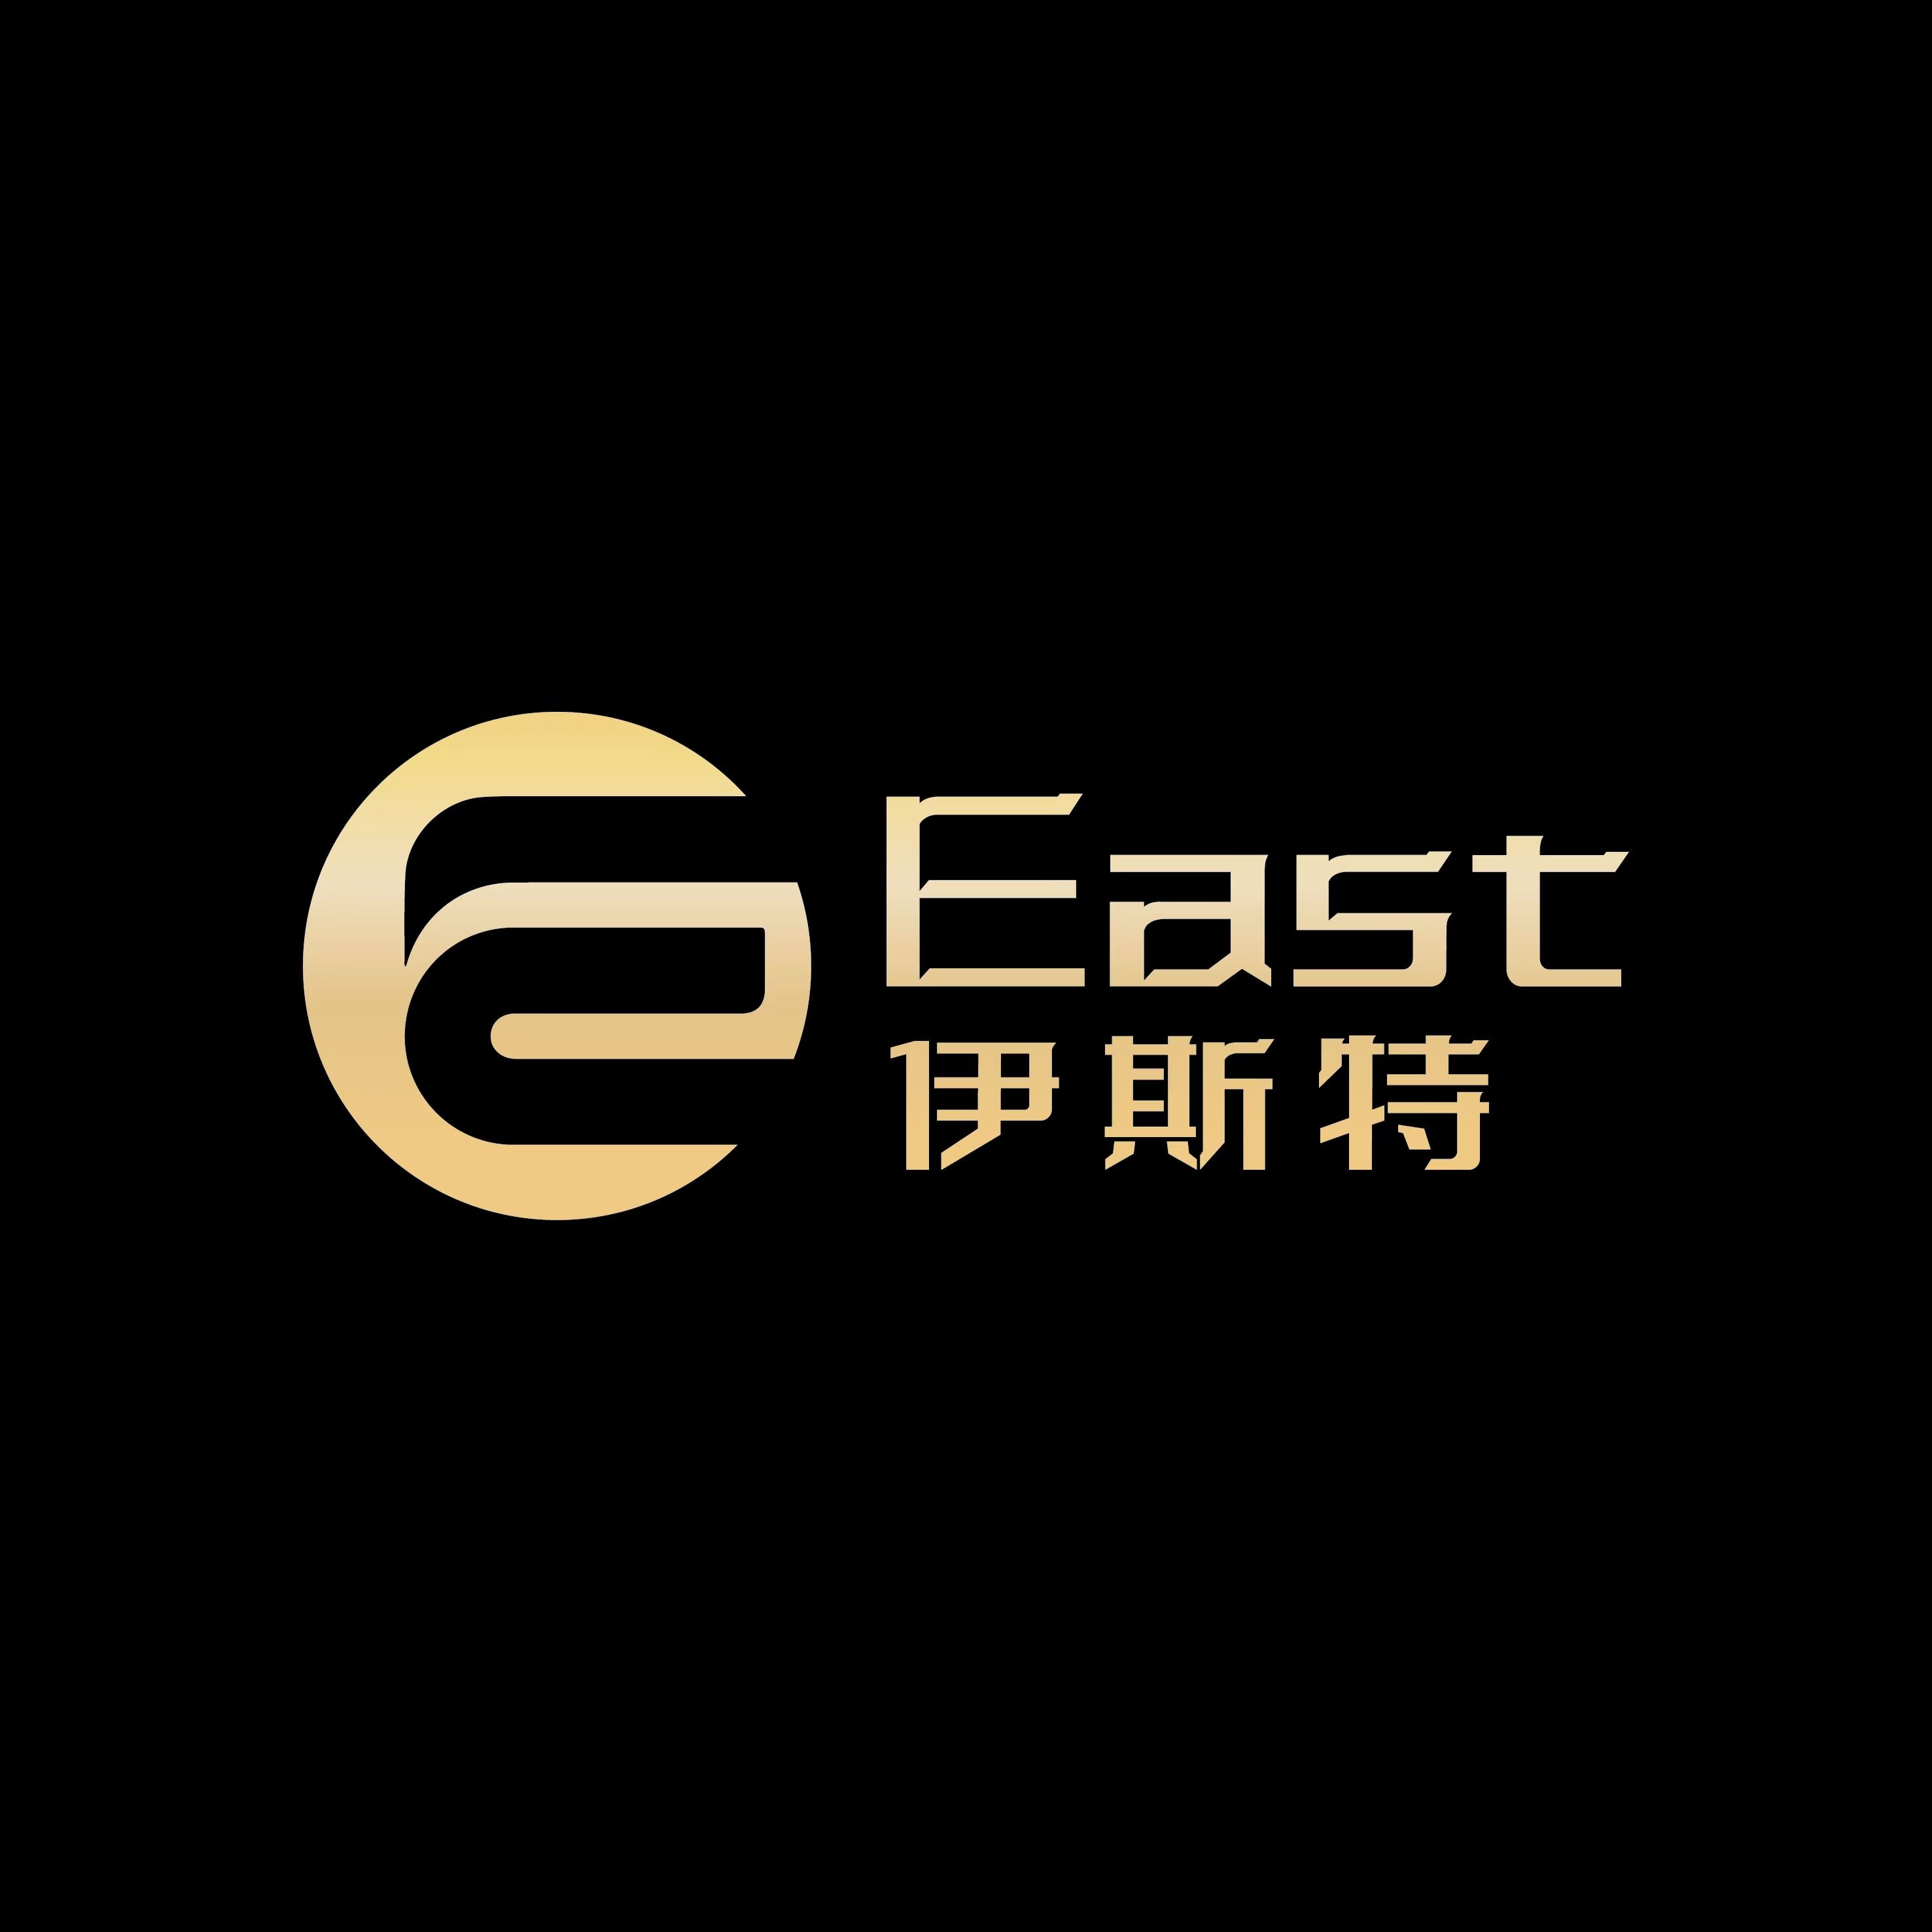 Yancheng East Garment Ltd